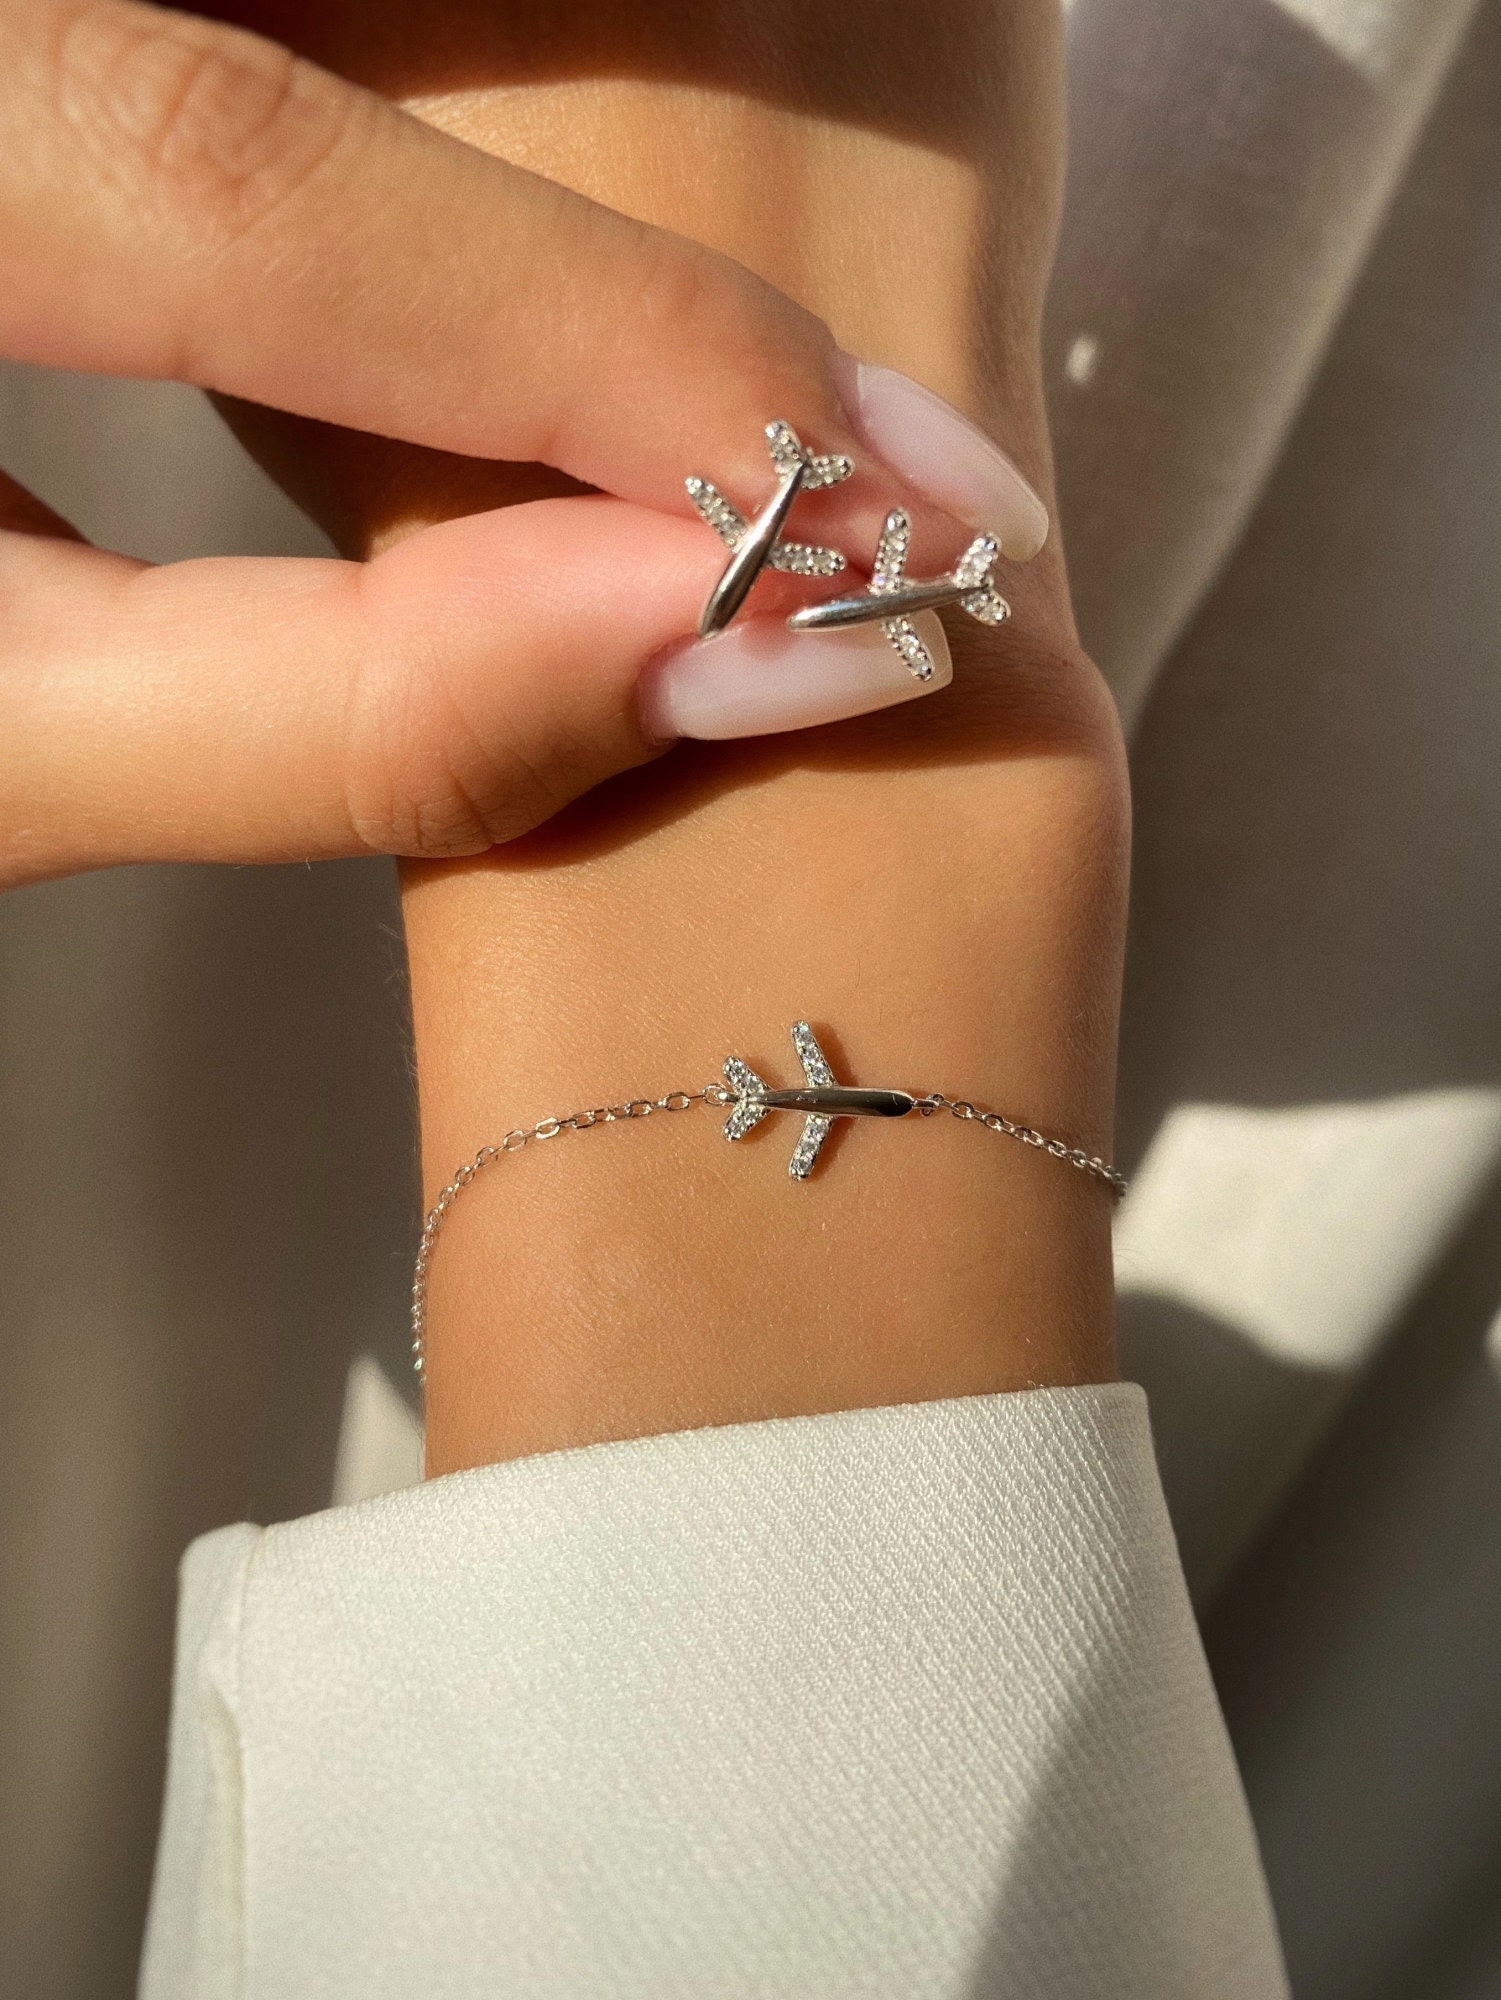 Bird-shaped bracelet, gold, from Fondo - فوندو - مستلزمات السفر والرحلات